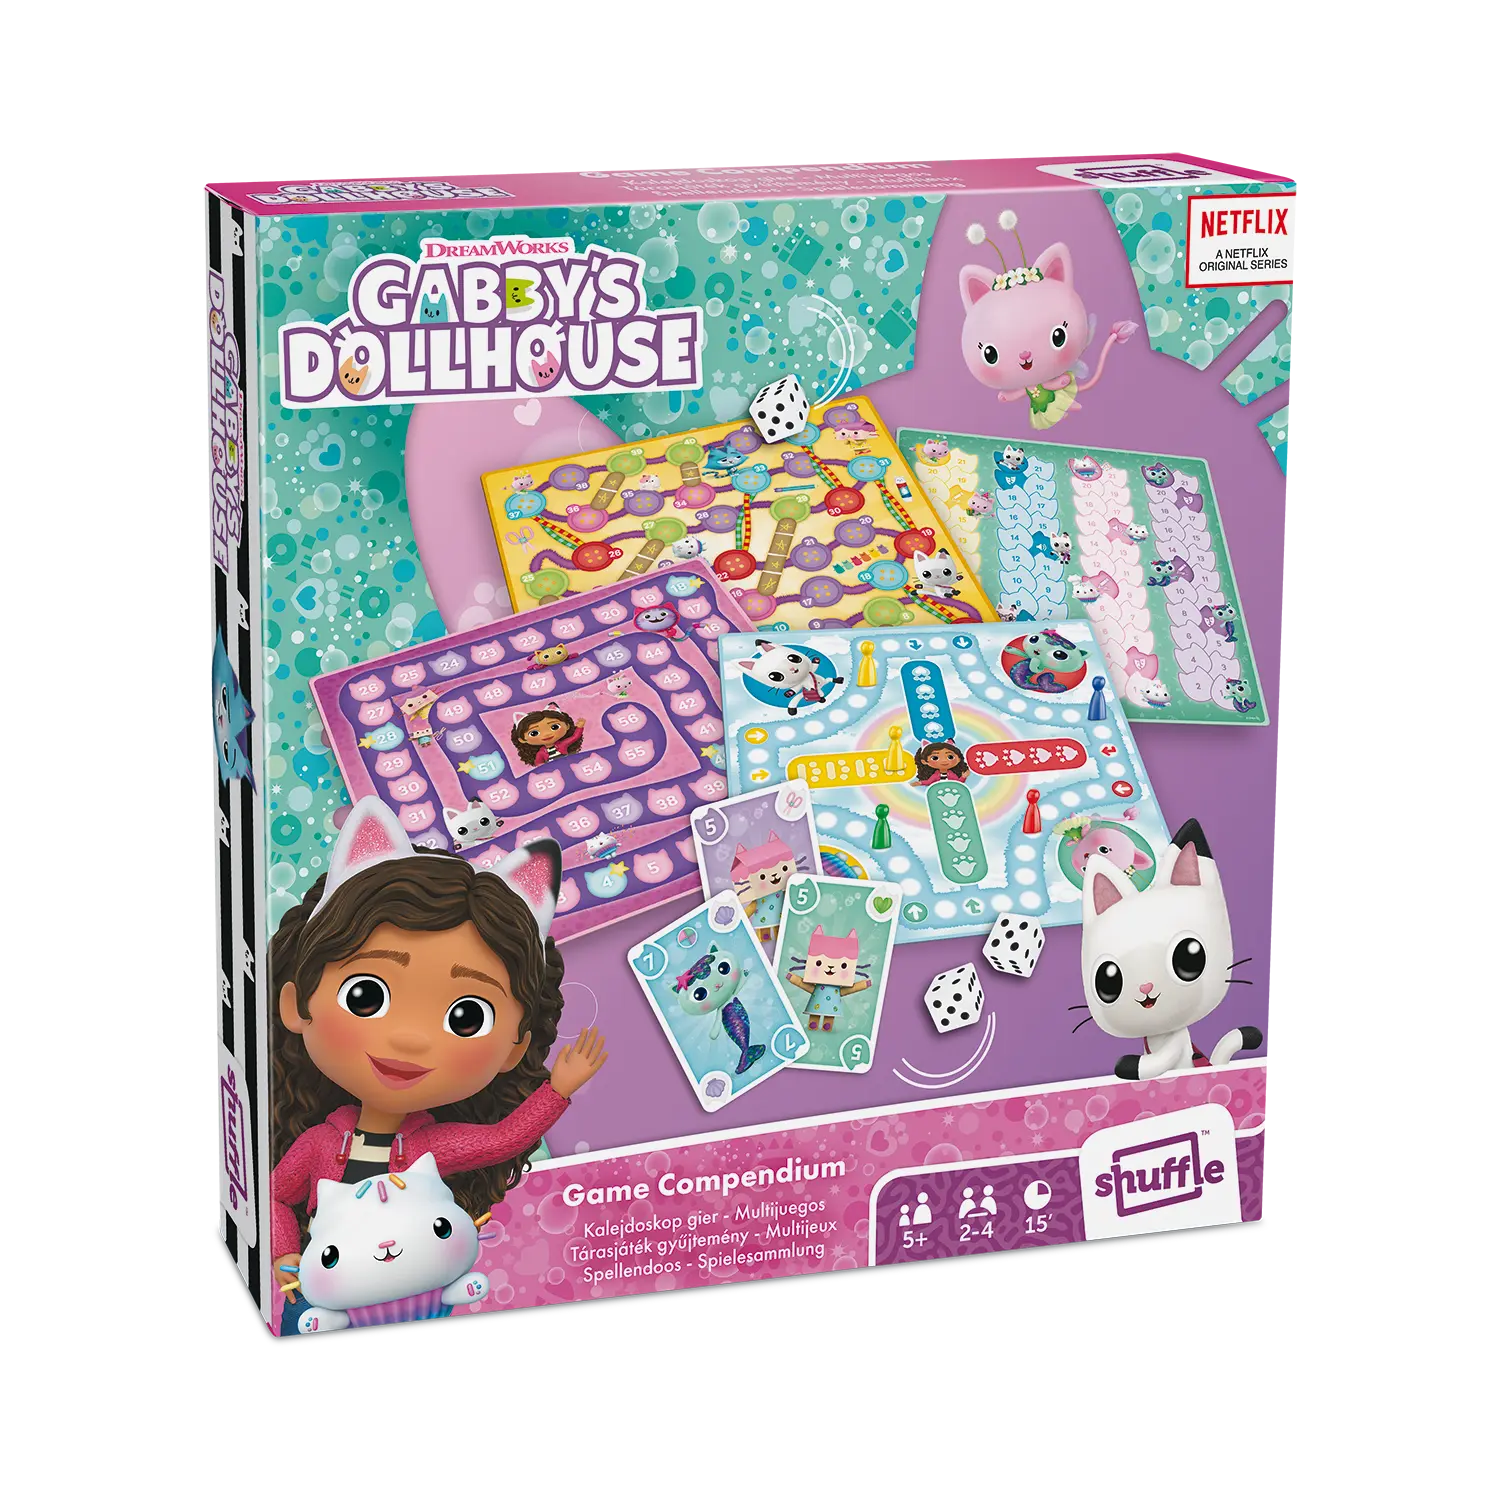 Die Gabby's Dollhouse Spielesammlung ist frontal zu sehen und steht vor einem weißen Hintergrund.